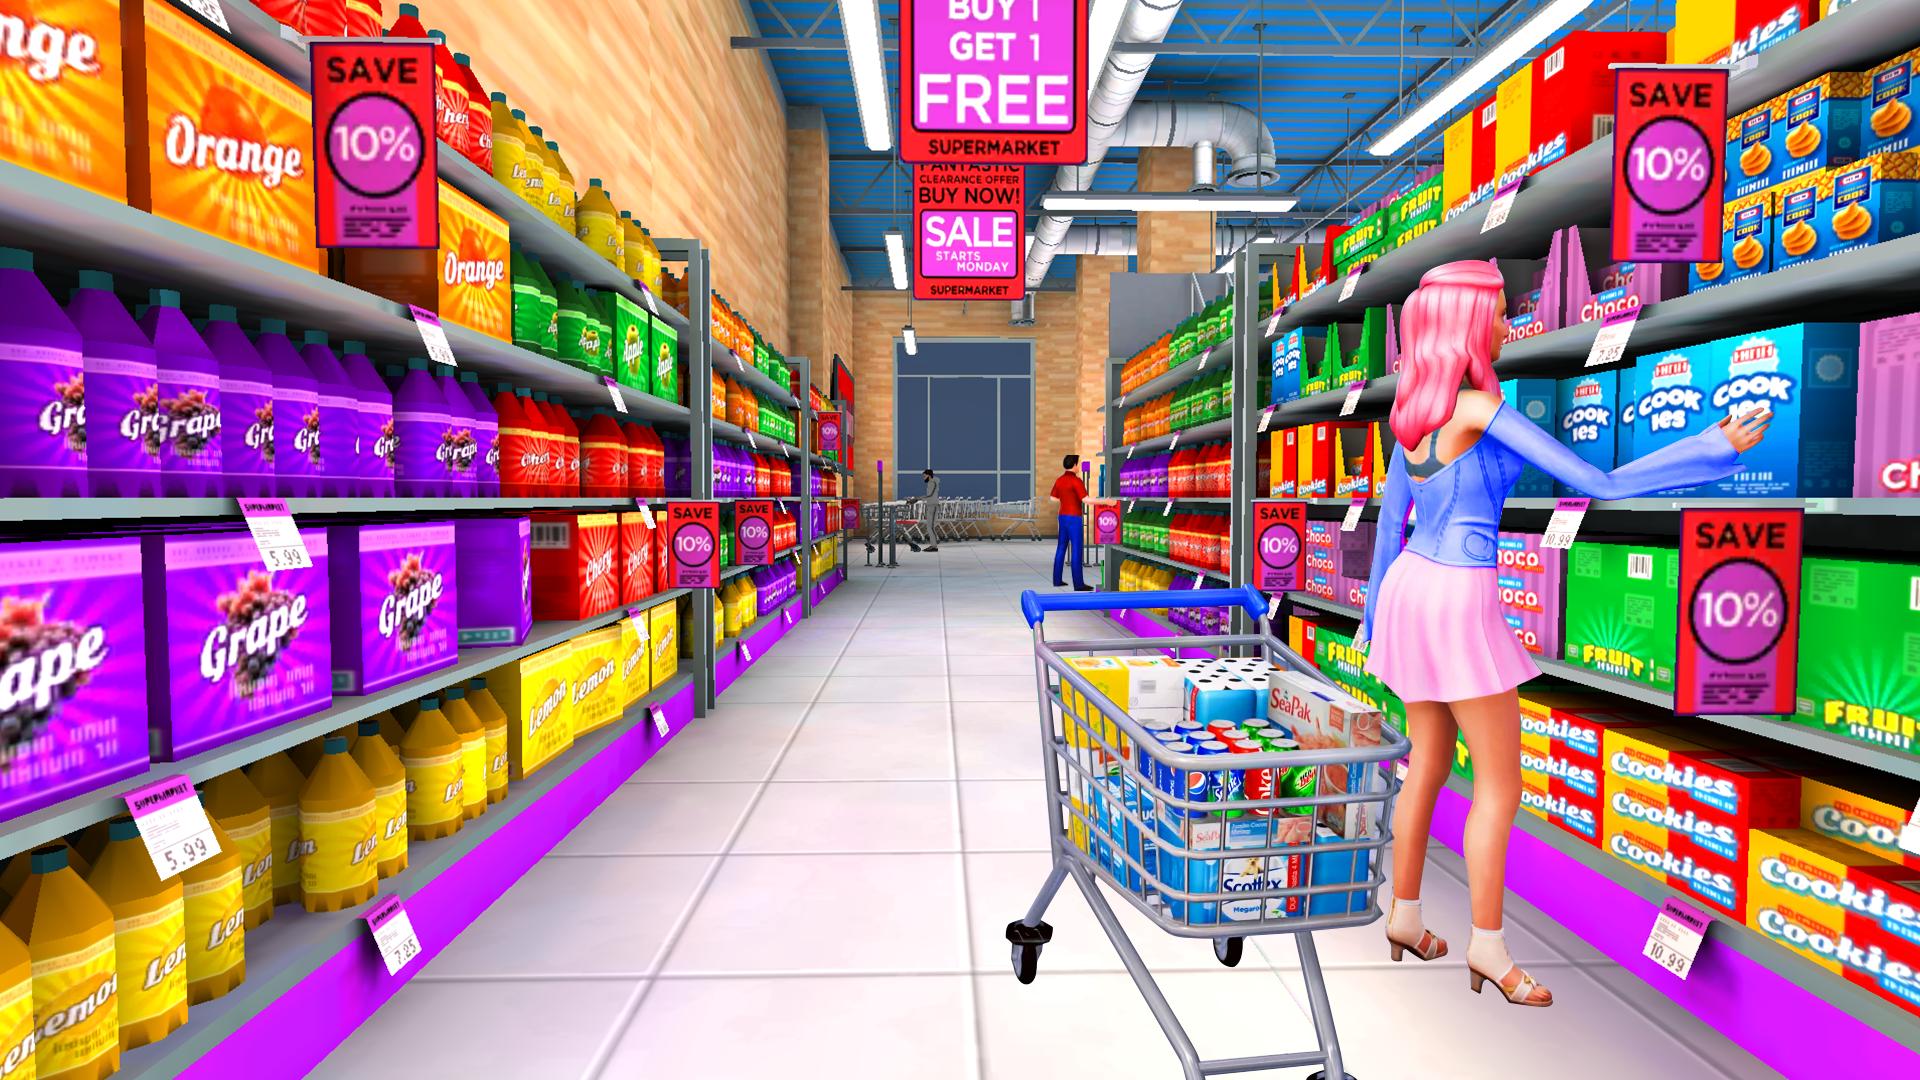 Plati market games. Игра "супермаркет". Игра торговый центр. Игра про торговый центр для девочек. Супермаркет игра на андроид.